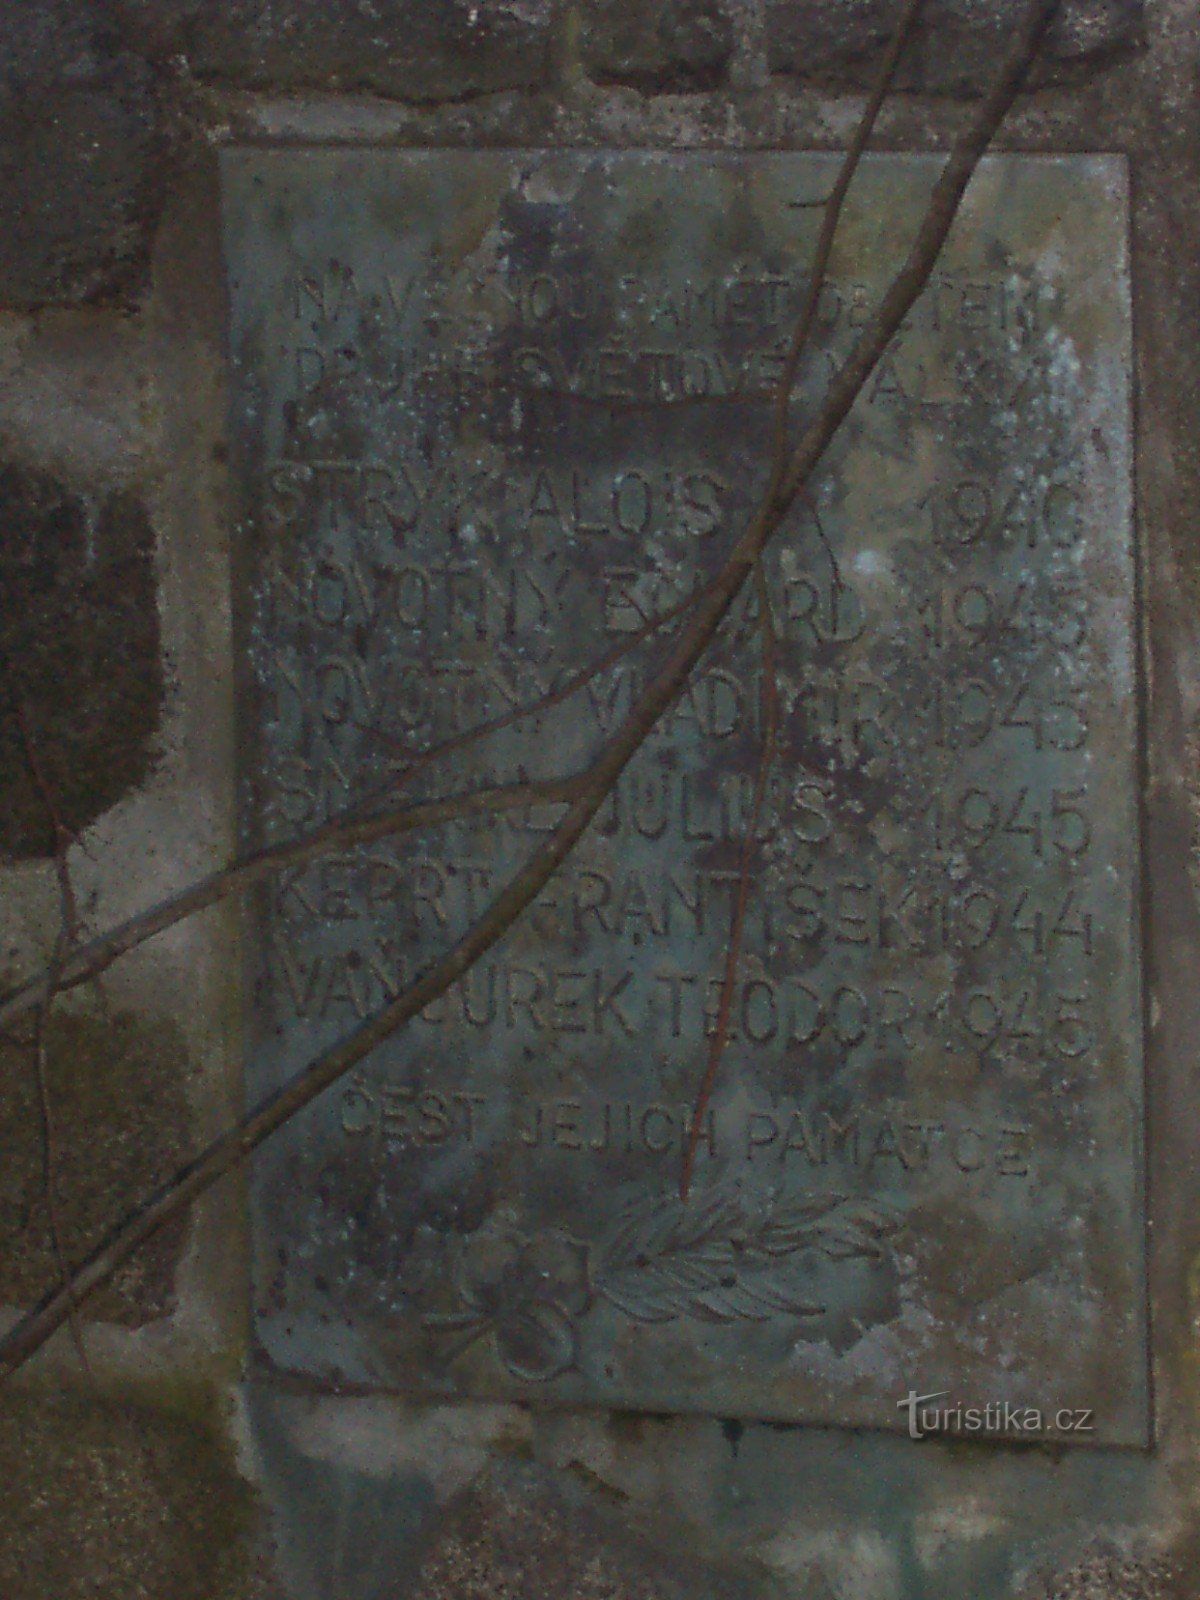 chi tiết của tượng đài: tấm bảng kỷ niệm Chiến tranh thế giới thứ nhất